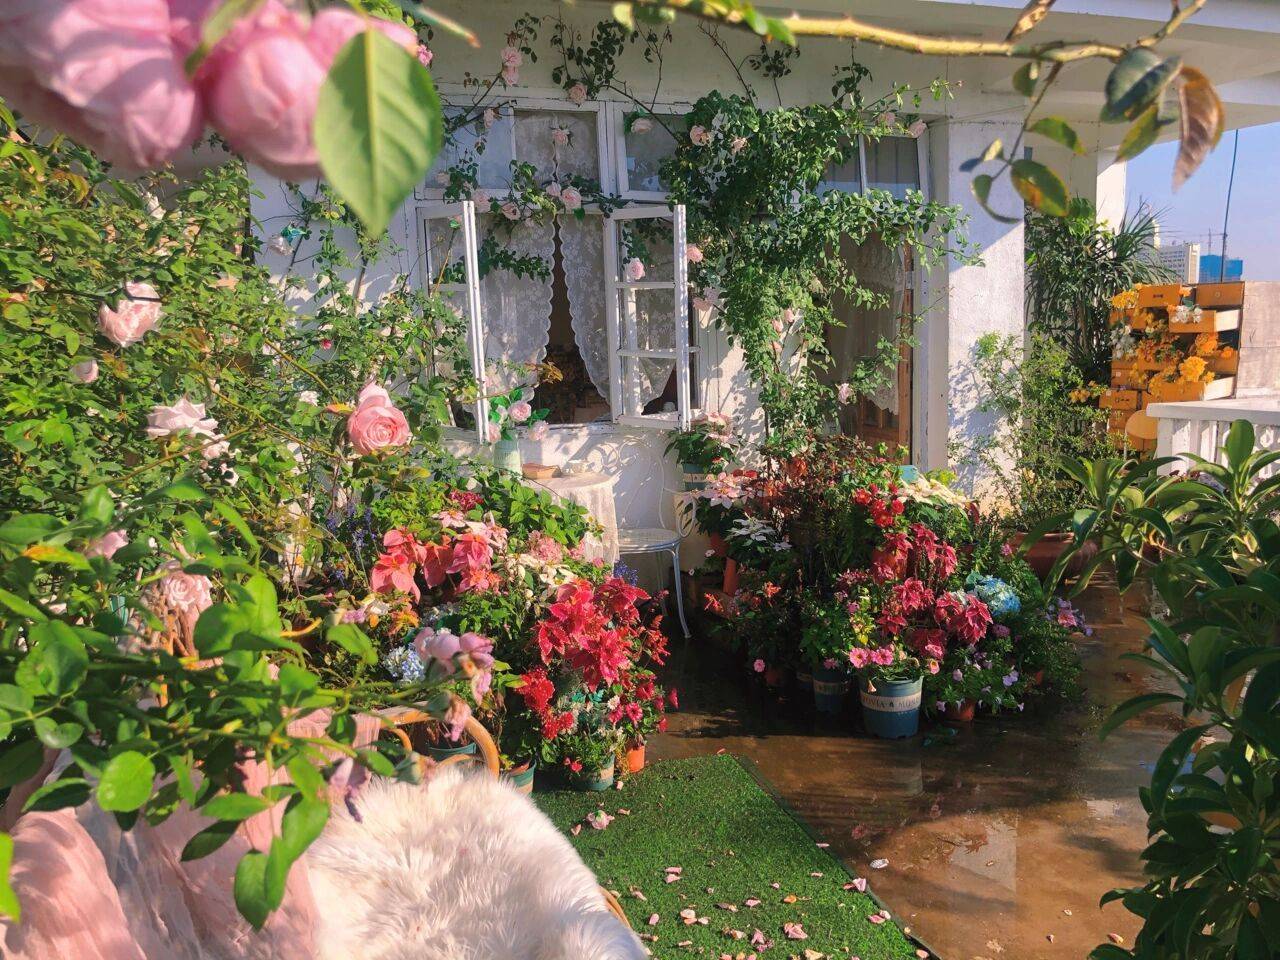 Đam mê với việc trồng hoa, cô nàng độc thân 27 tuổi thuê nhà trên sân thượng để tạo ra khu vườn đẹp như tranh vẽ của riêng mình - Ảnh 13.